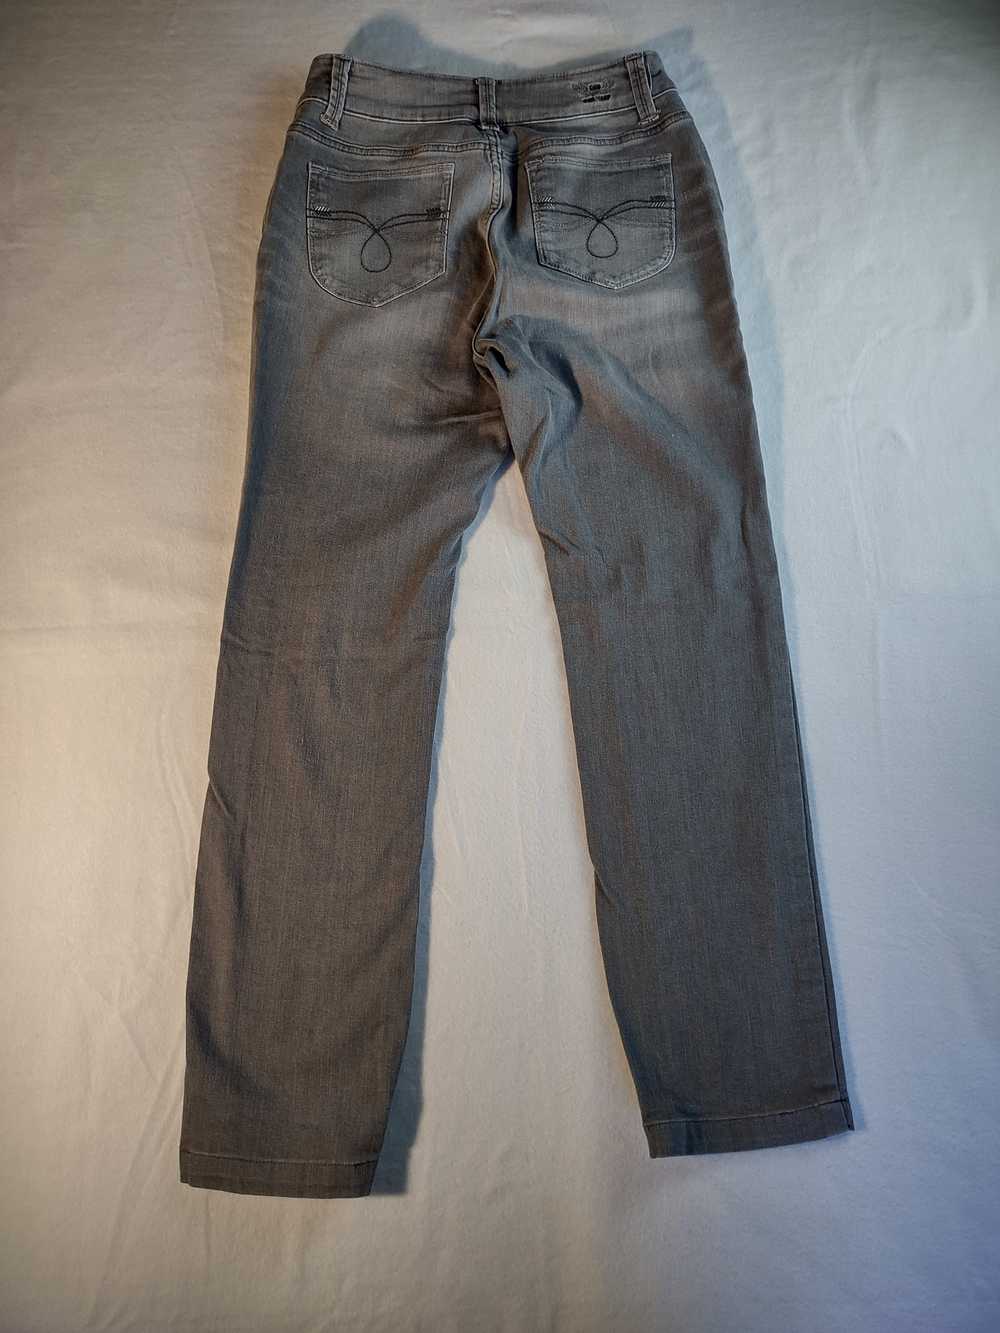 Lee Lee Perfect Fit Just Below Waist denim jeans … - image 3